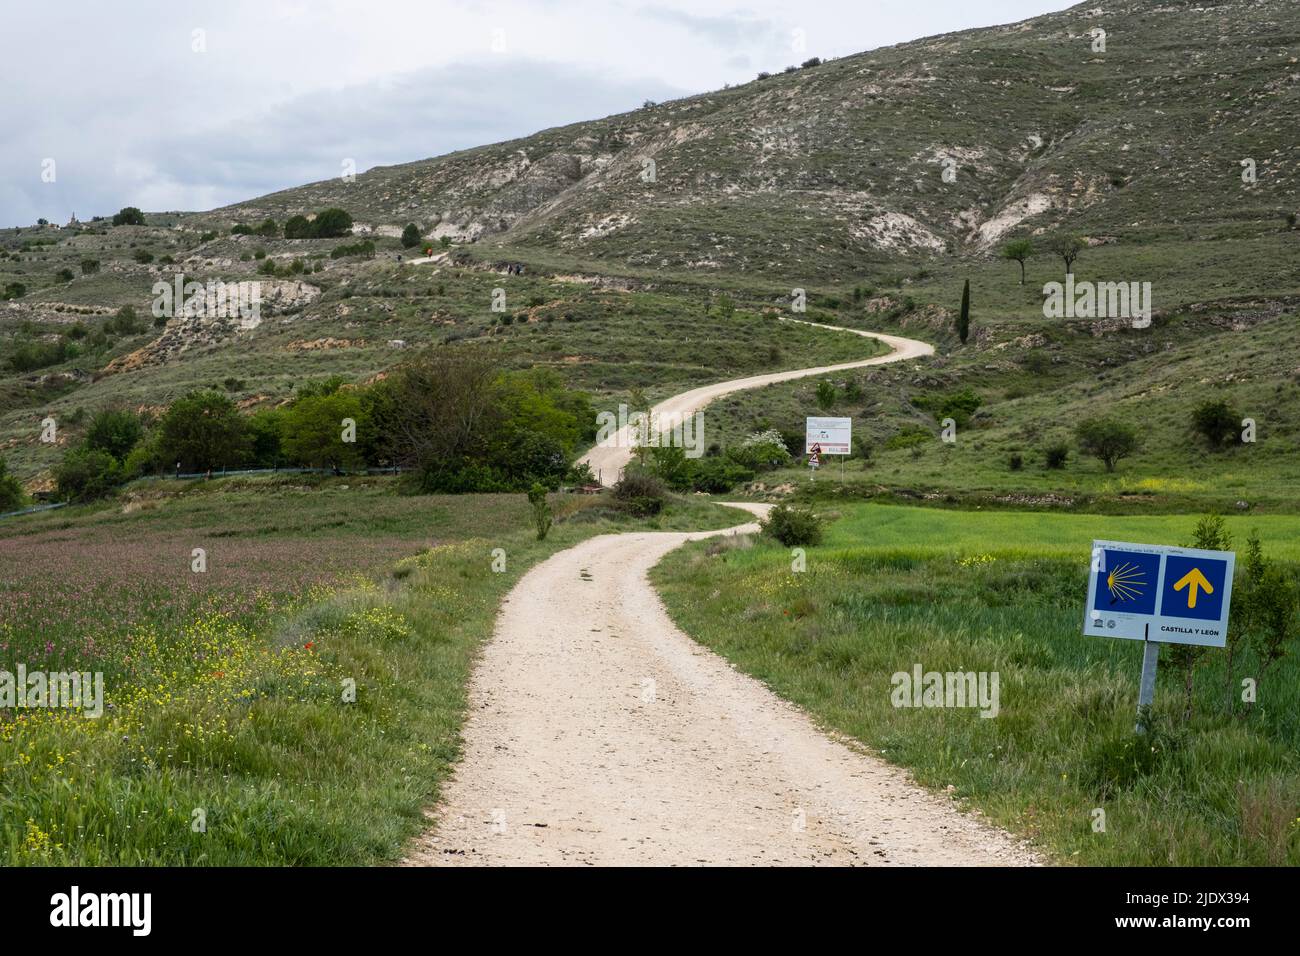 Espagne, en quittant Castrojeriz en route vers Fromista sur le Camino de Santiago. Le Camino mène vers le haut de la colline au loin. Banque D'Images